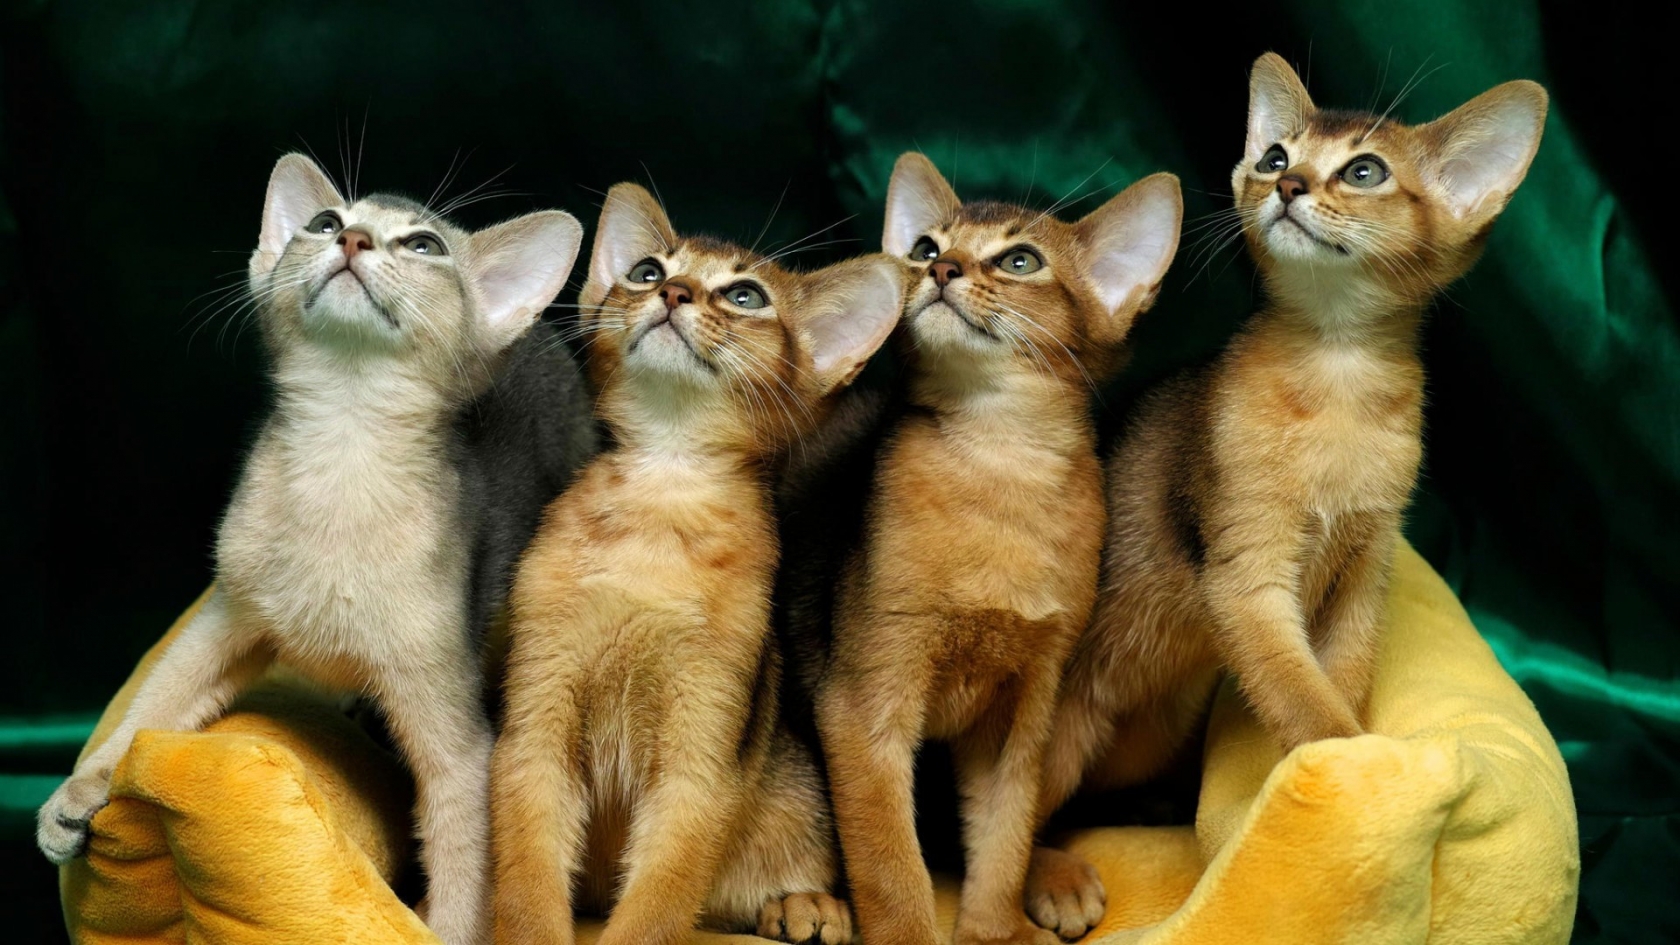 4 Cute Kittens for 1680 x 945 HDTV resolution